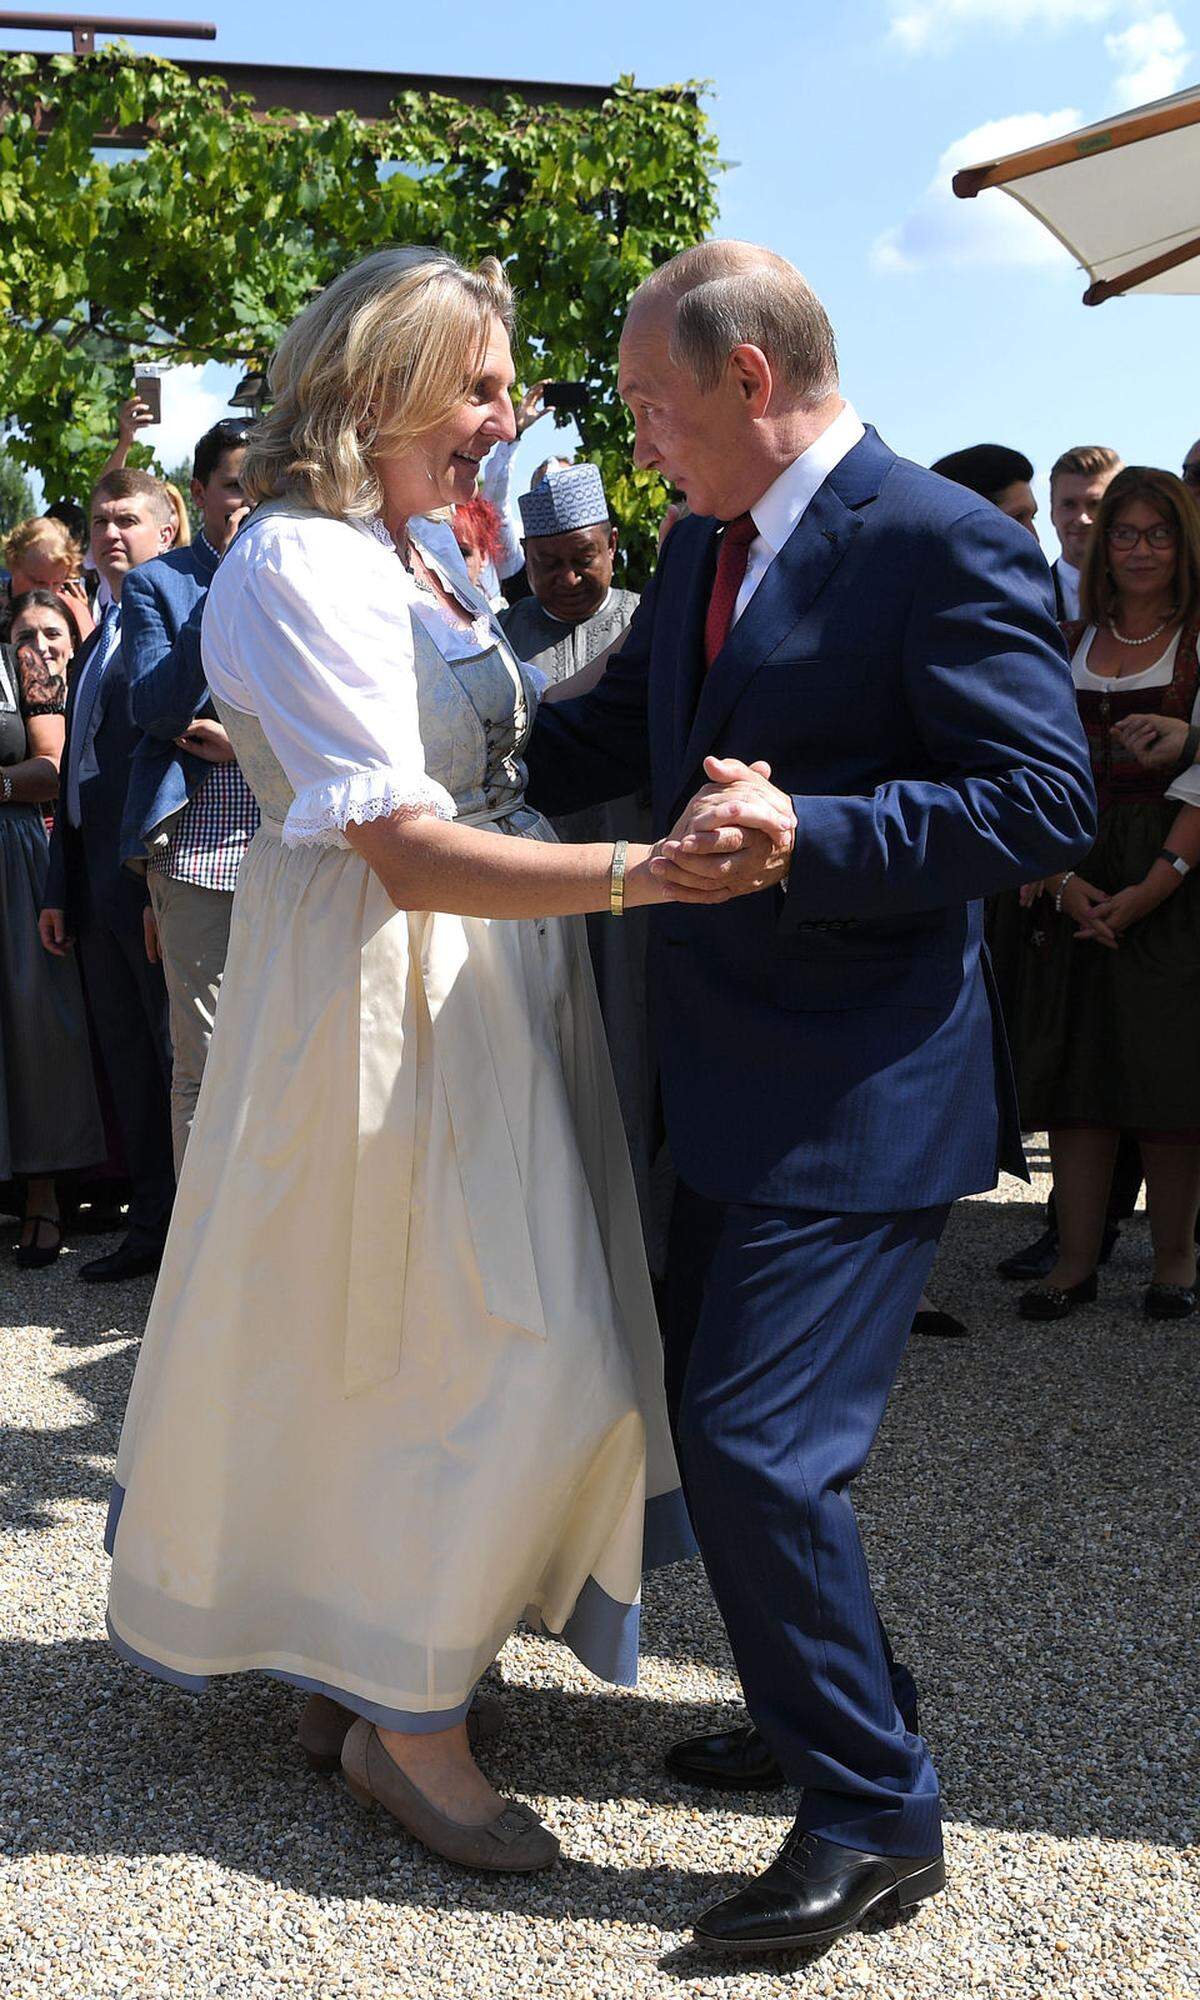 Die österreichische Außenministerin Karin Kneissl heiratete bekanntermaßen ebenfalls im August. Dank der delikaten Gästeliste - inklusive Russlands Präsident Wladimir Putin - hat ihr weißes Dirndl nicht nur die südsteirische Weinstraße, sondern die ganze Welt gesehen.